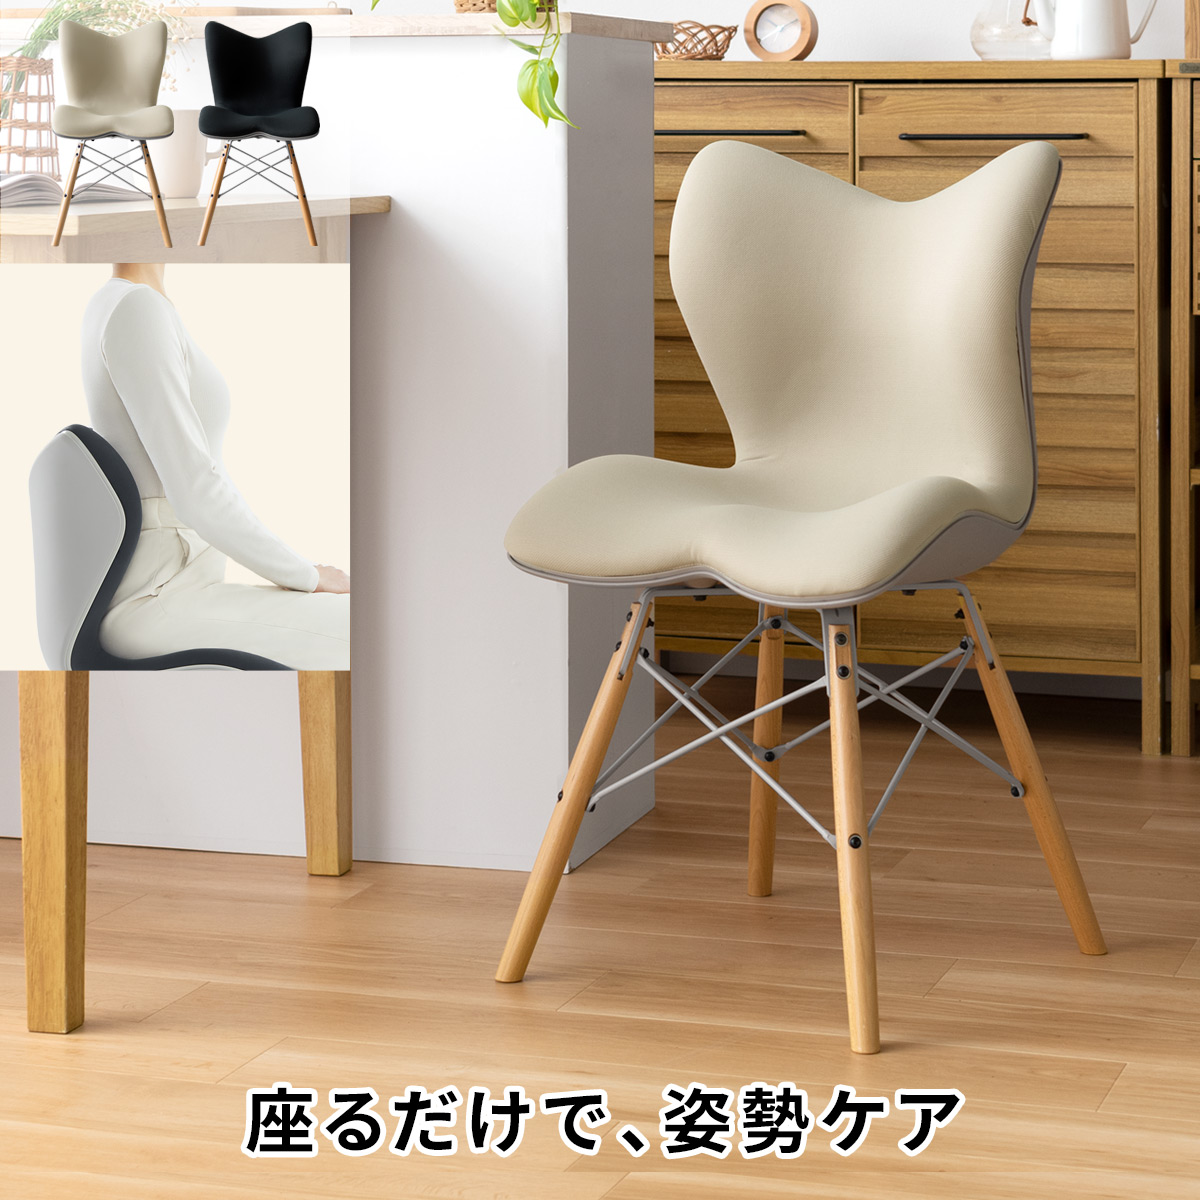 椅子 イス チェア 姿勢ケア 骨盤 ダイニングチェア デスクチェア S字姿勢 スタイル健康チェア シンプル Style Chair PM ピーエム